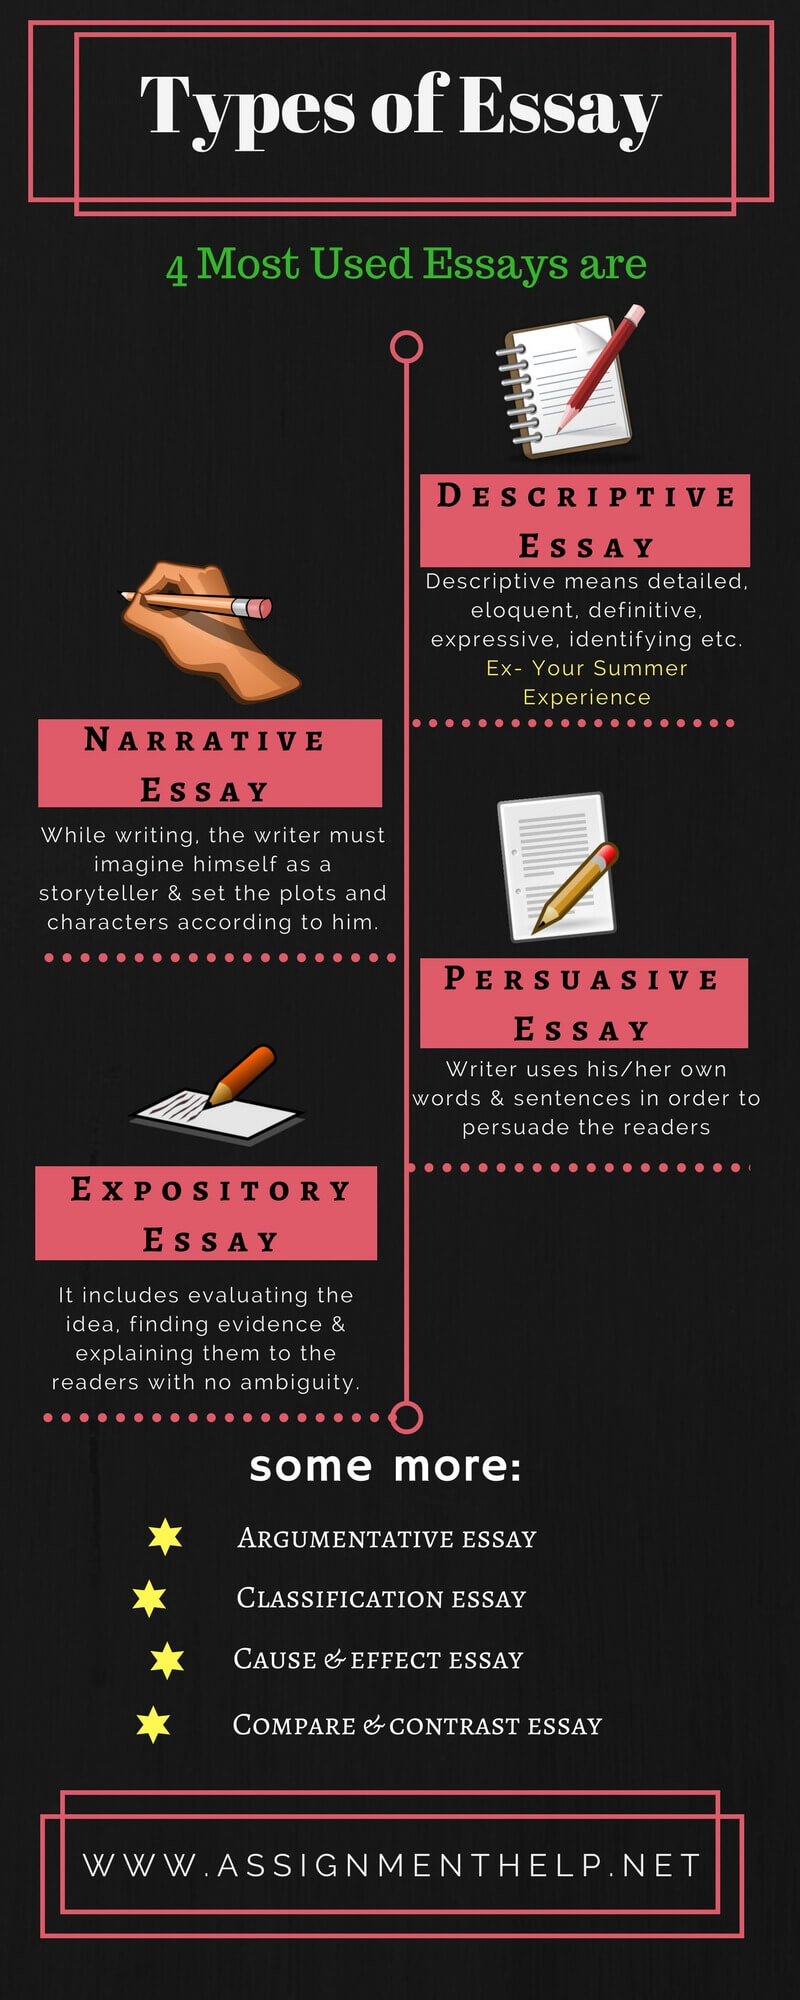 what is a descriptive narrative essay